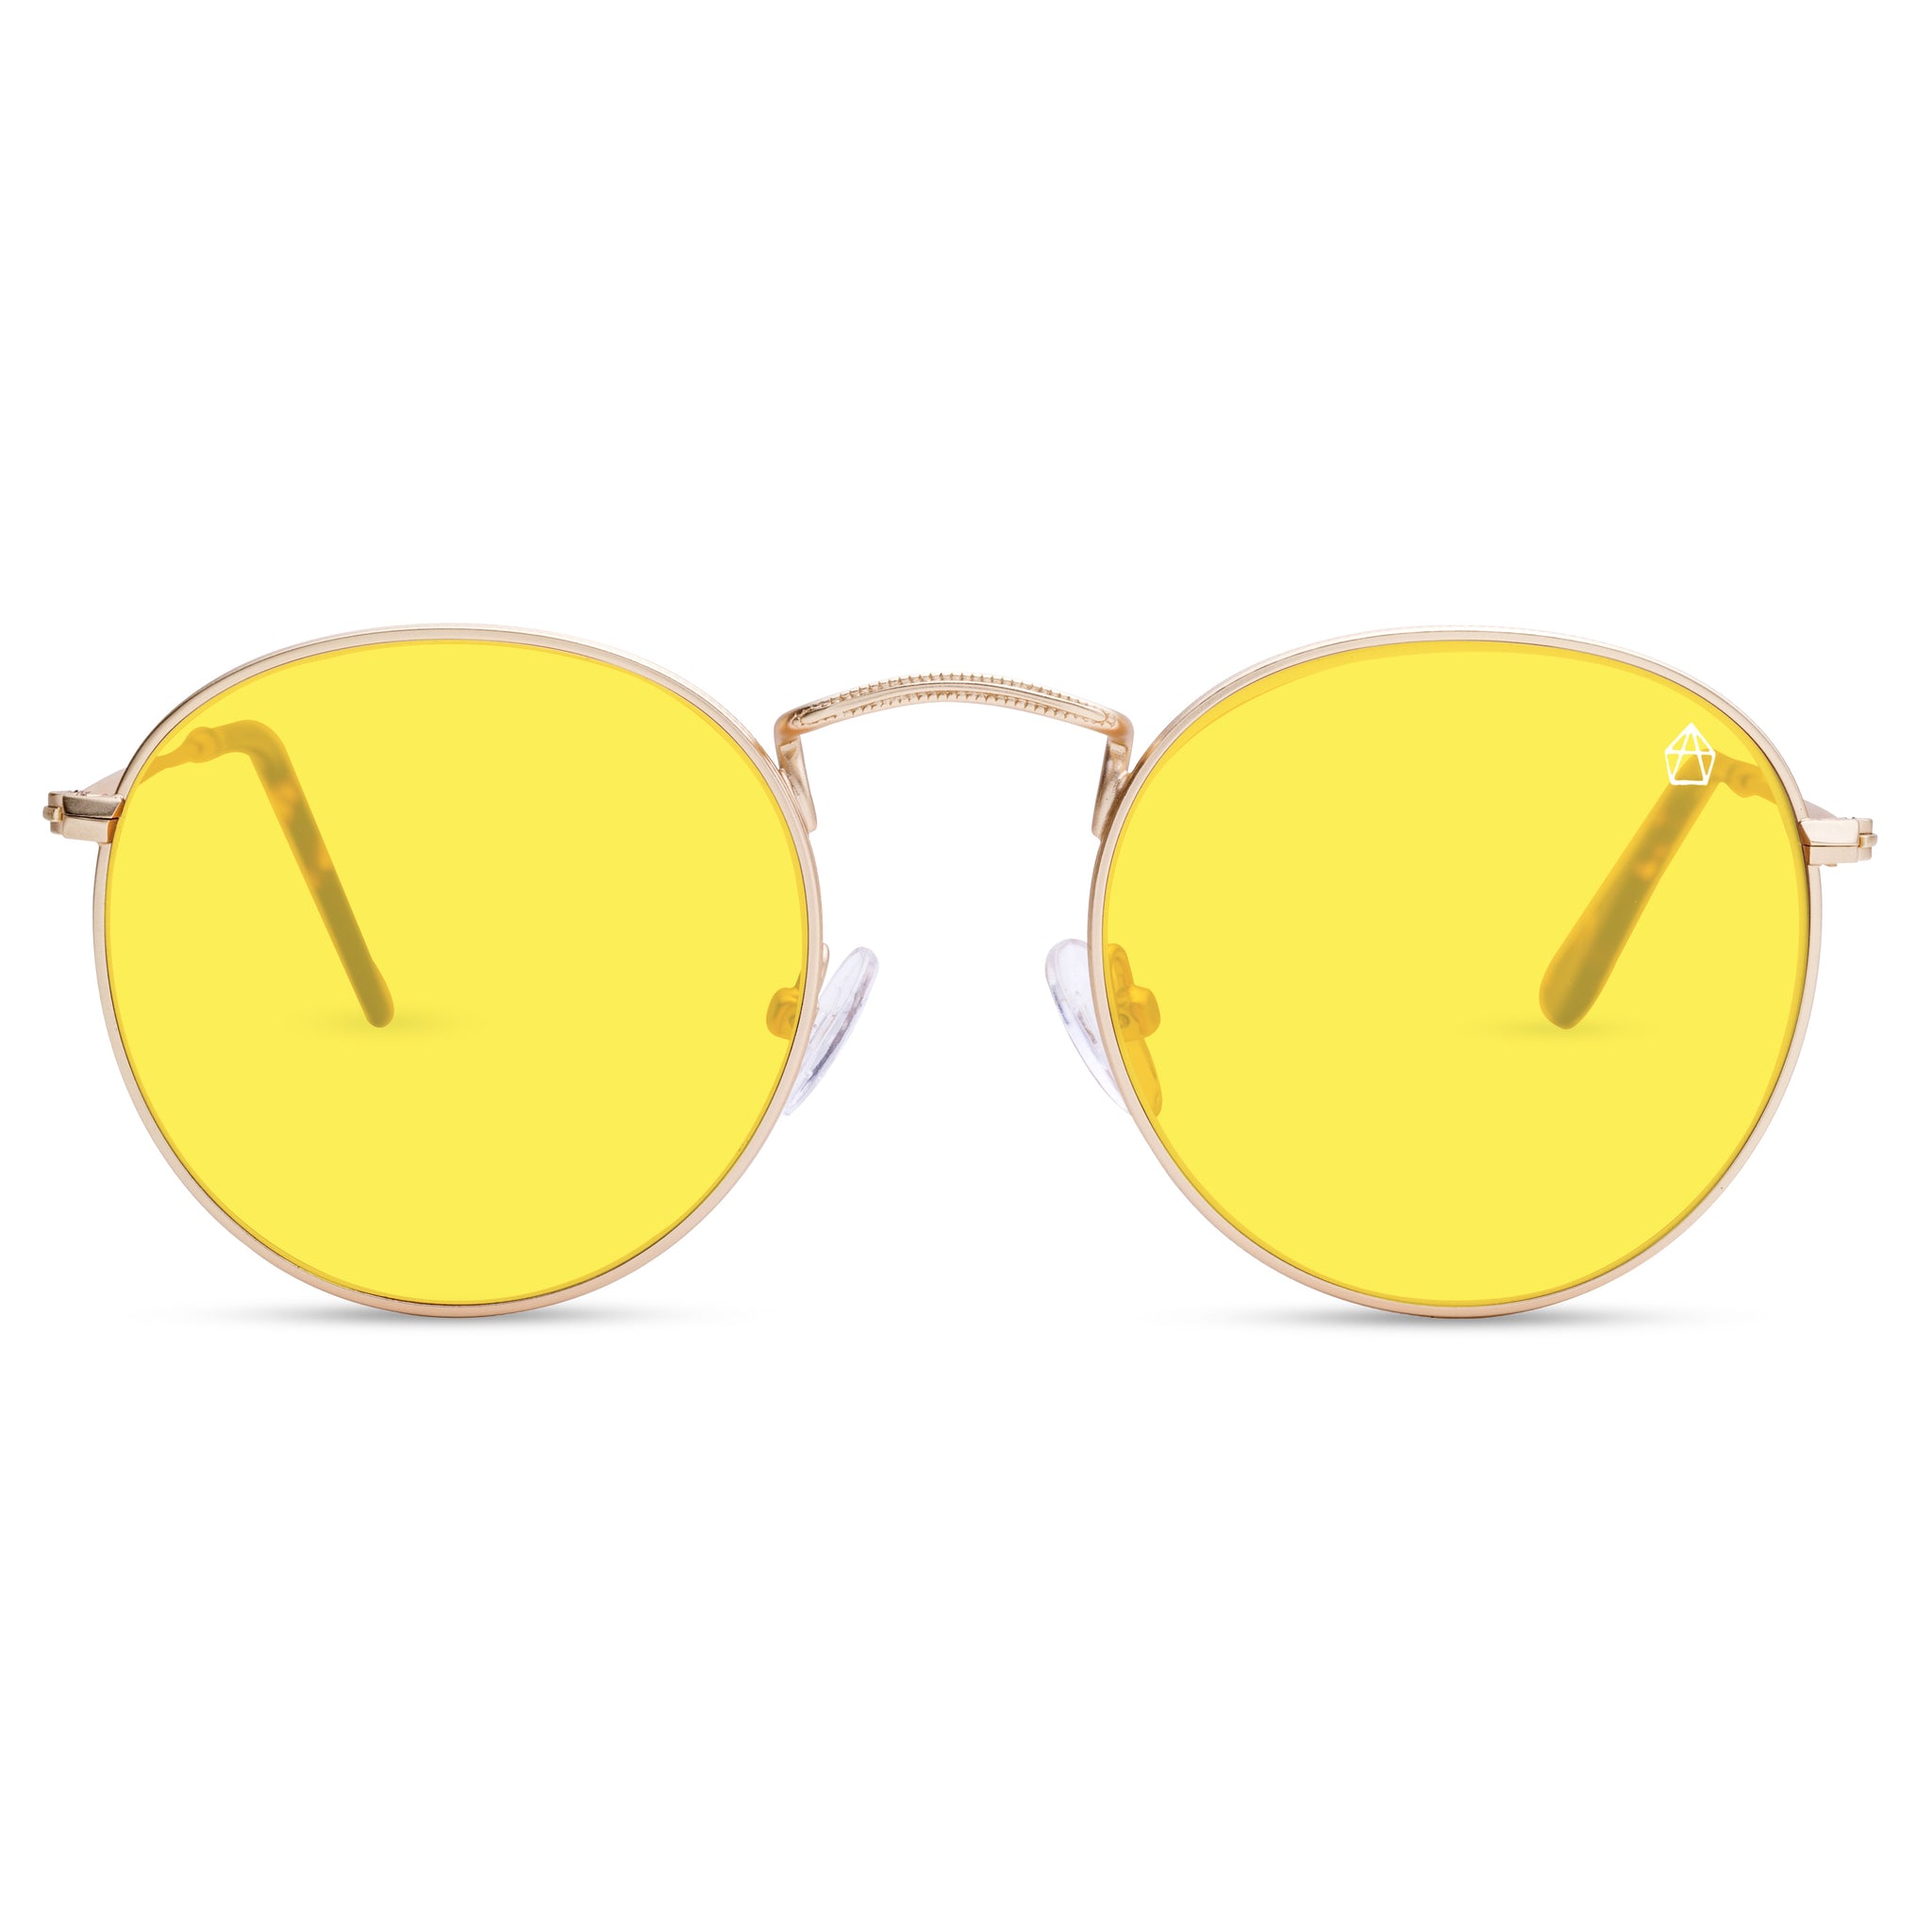 Gafas antifatiga antifatiga para hombre, lentes amarillas